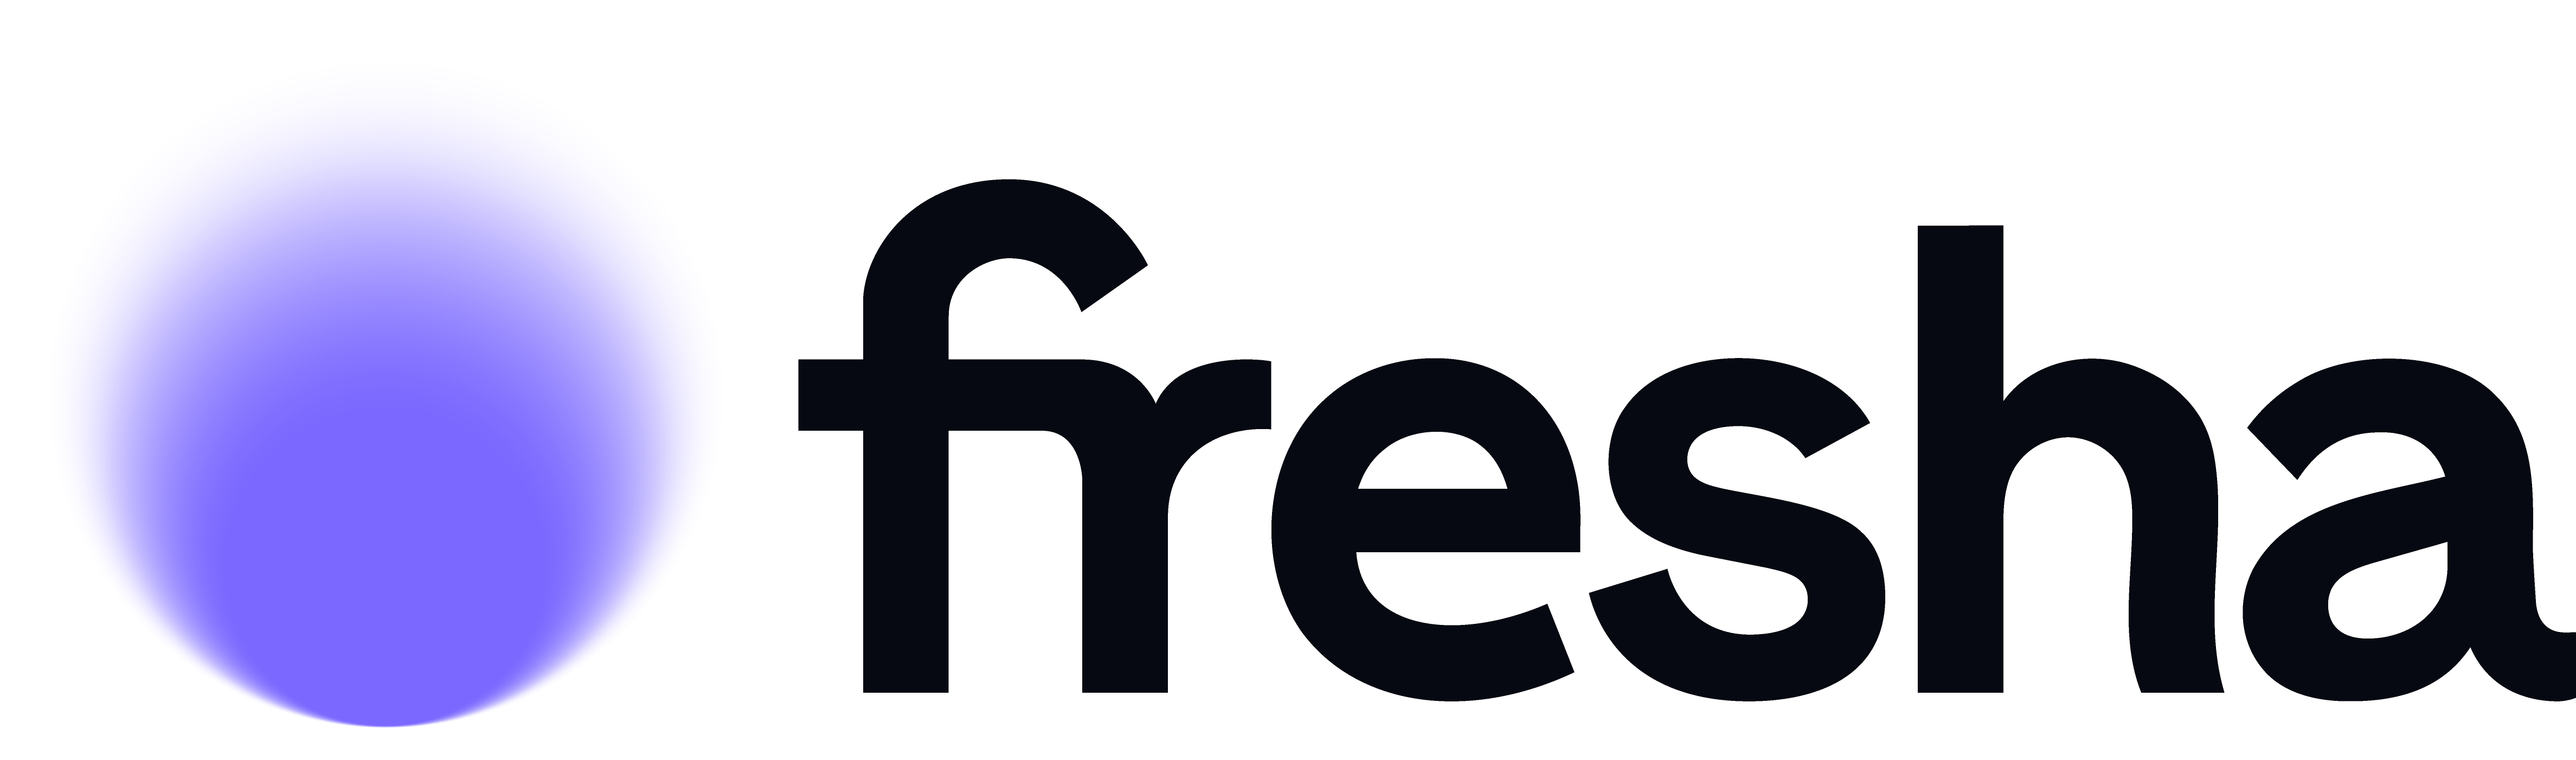 fresha-logo